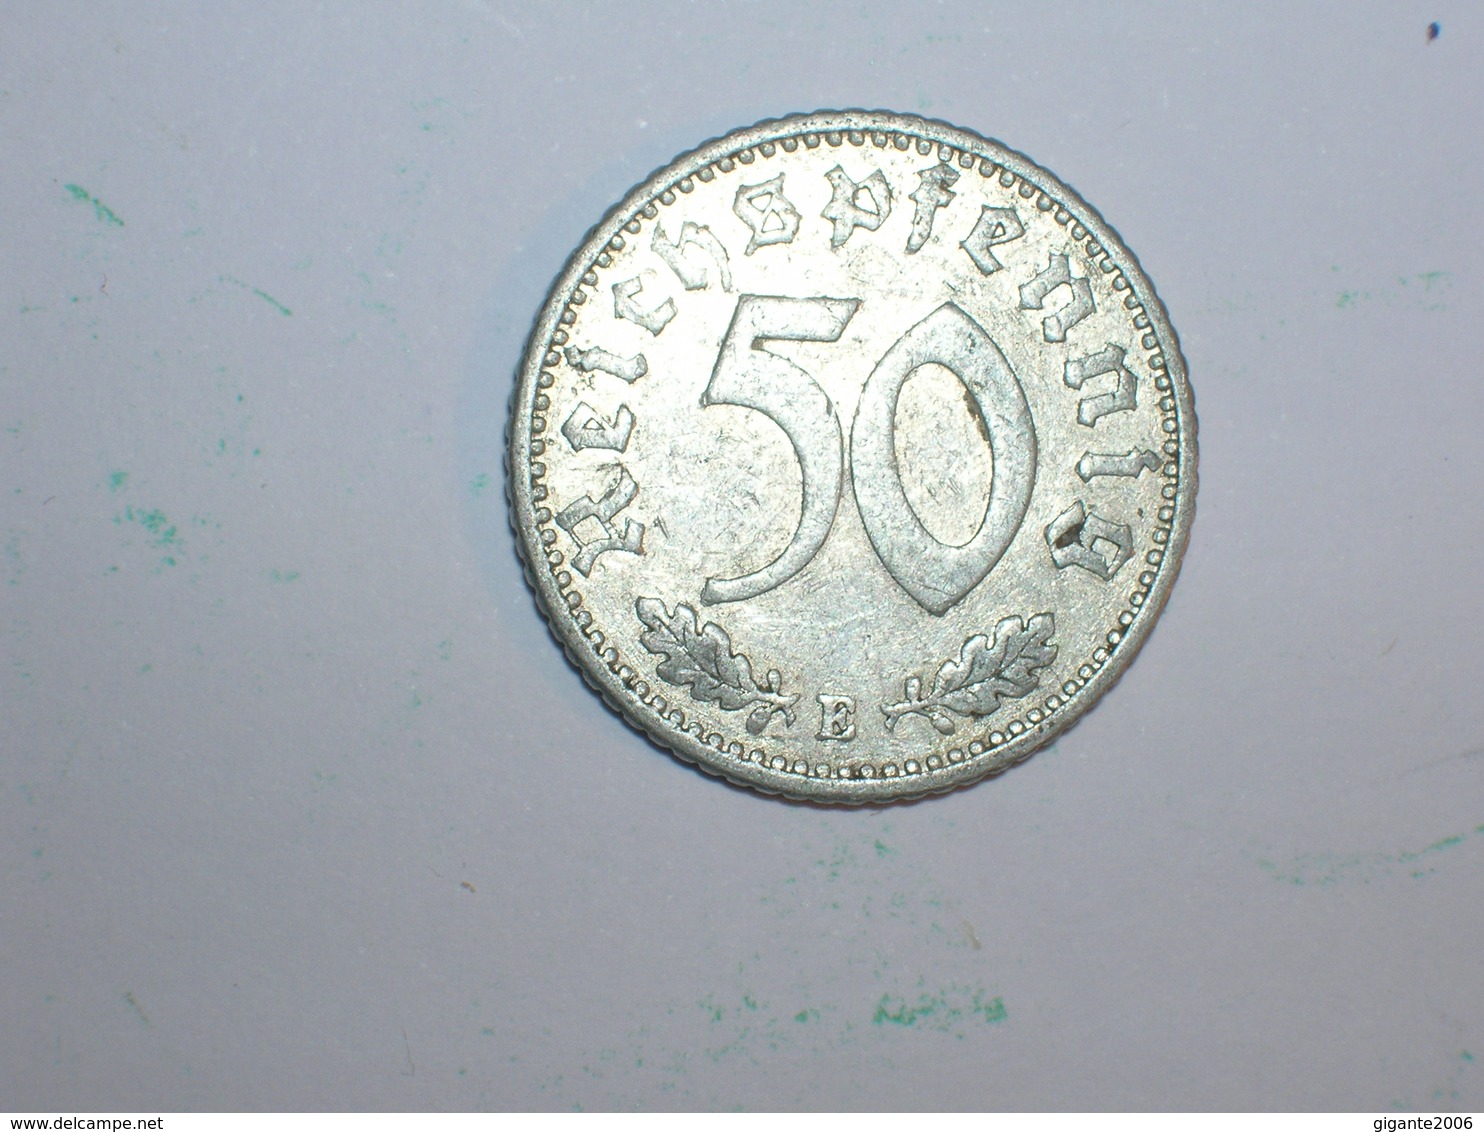 ALEMANIA 50 PFENNIG 1935 E (1219) - 50 Reichspfennig